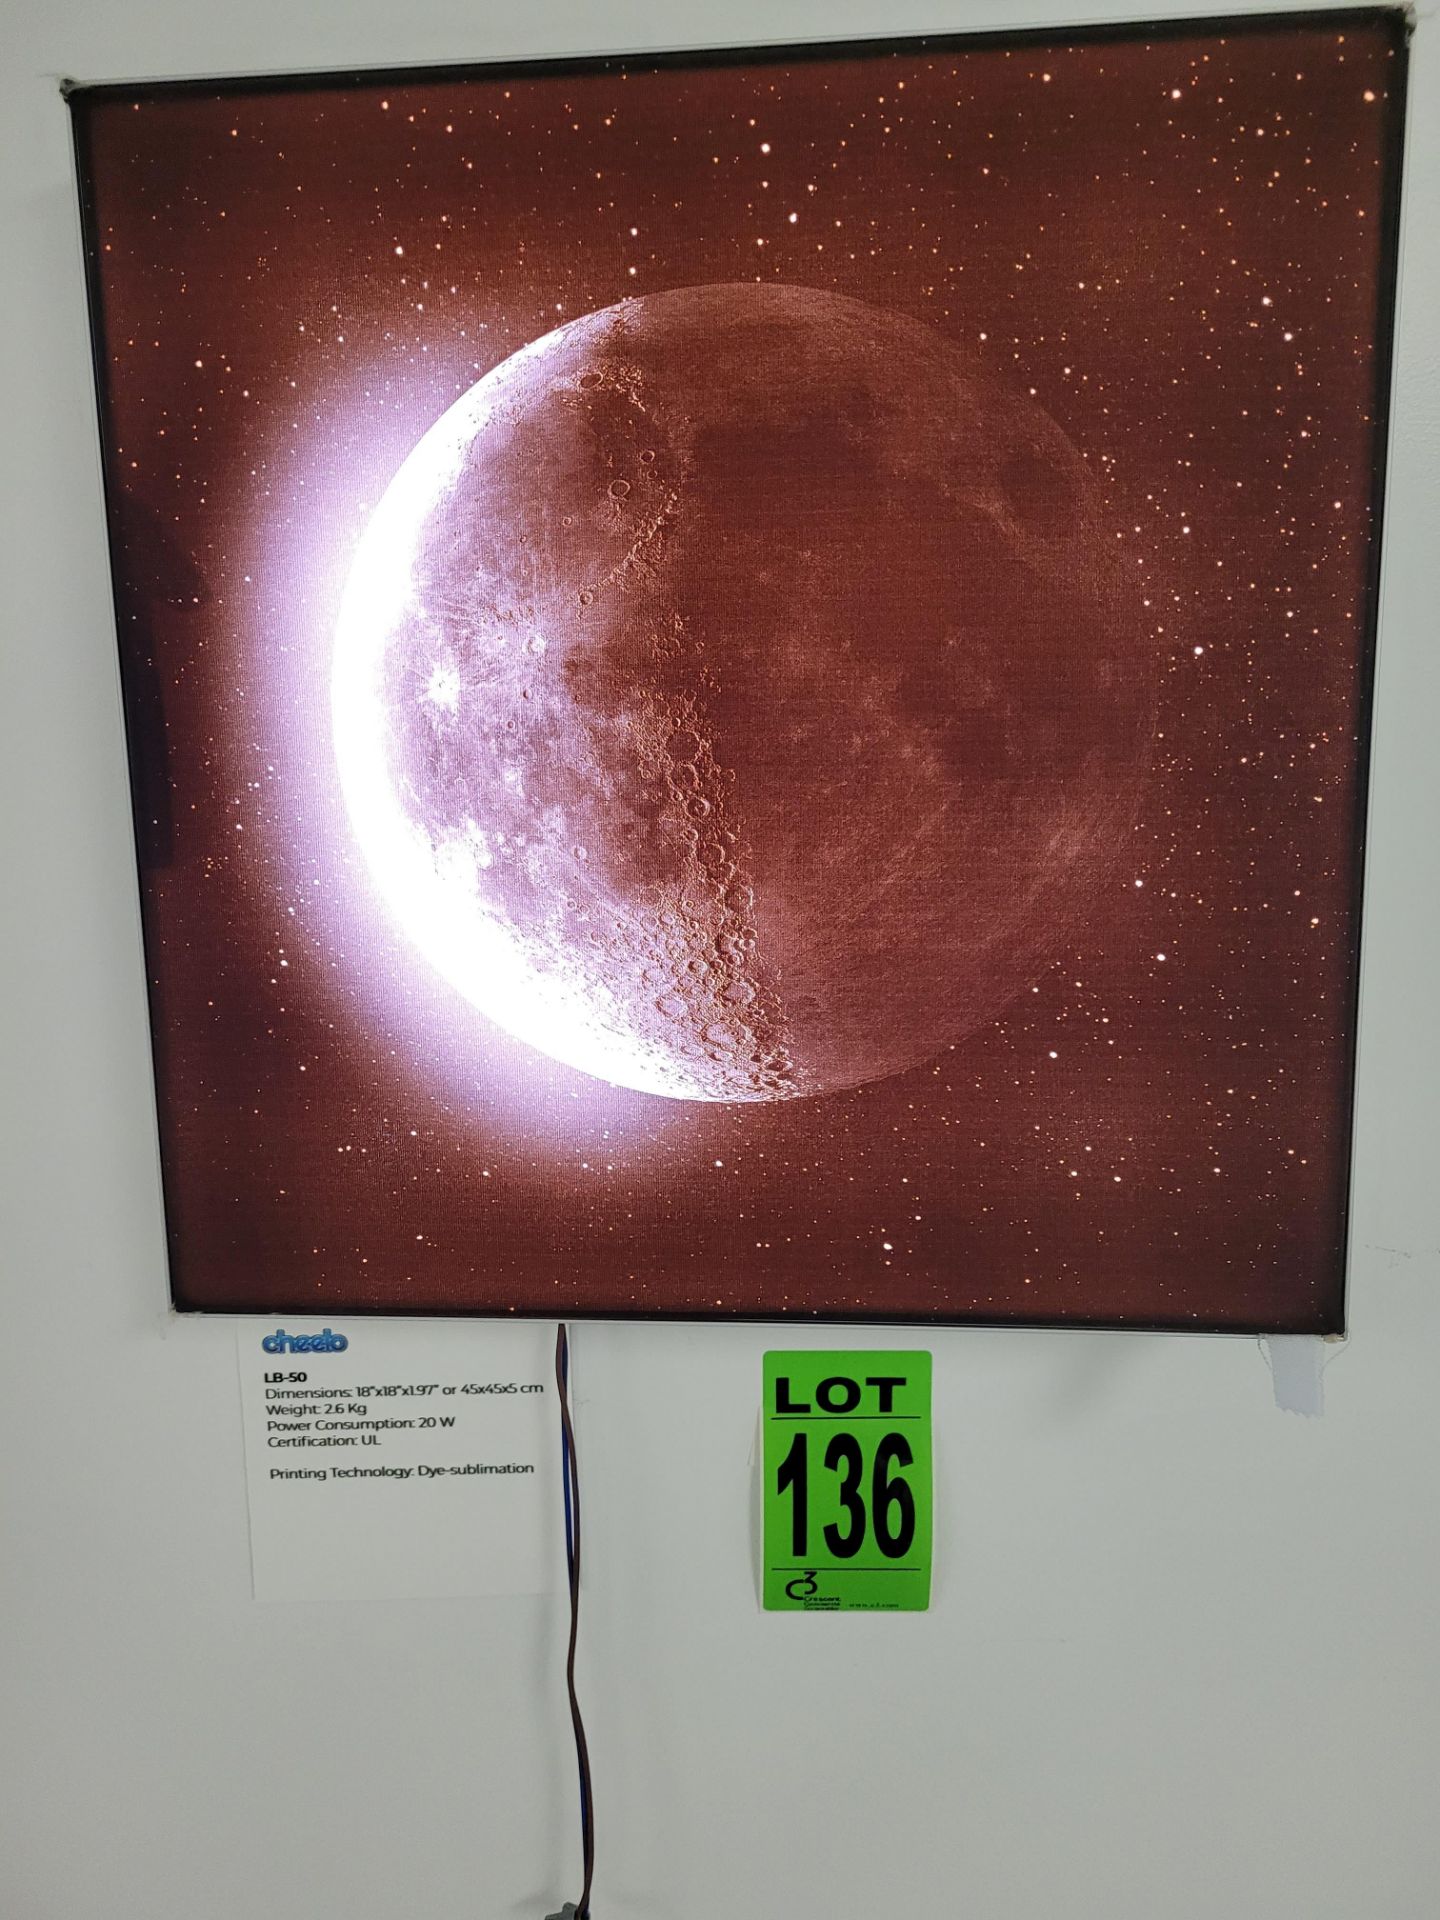 IRIDANCE backlit LED panel, Moon, 18" x 18" x17", Dye Sublimated